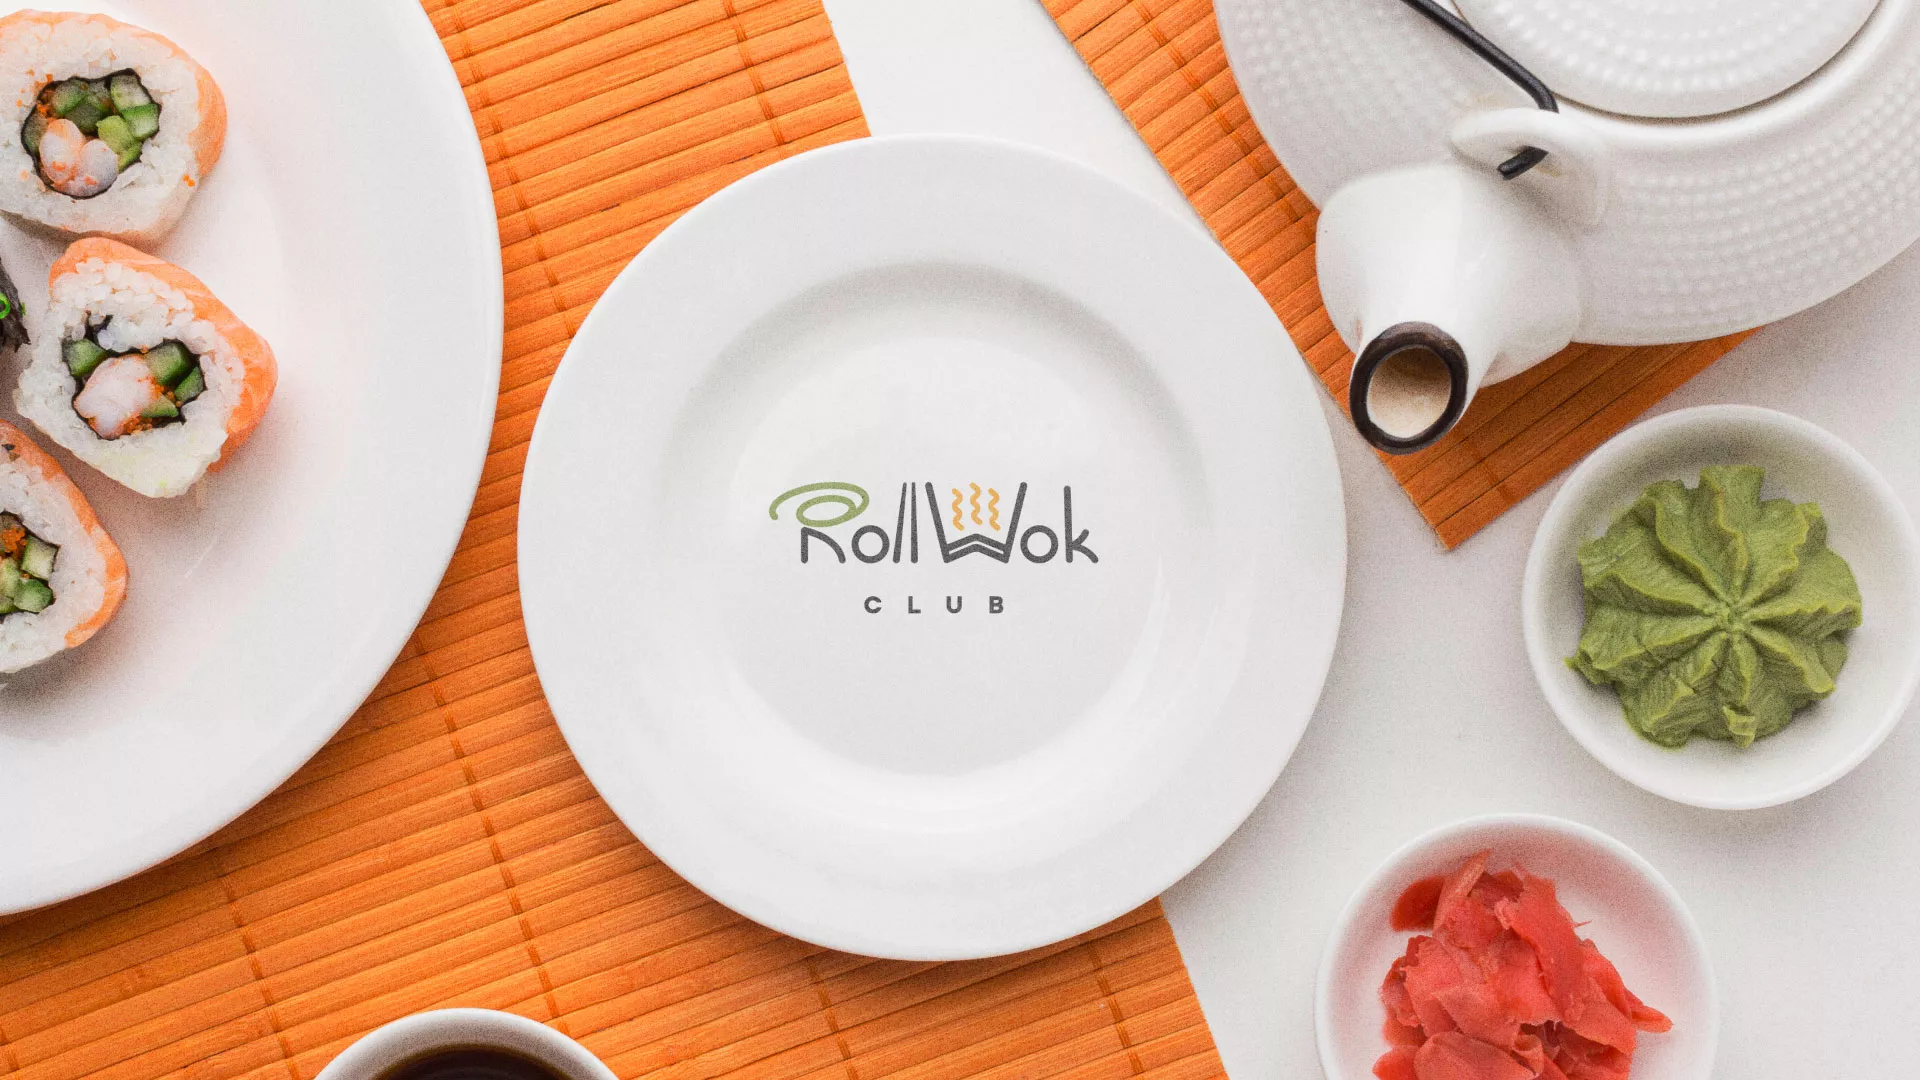 Разработка логотипа и фирменного стиля суши-бара «Roll Wok Club» в Собинке